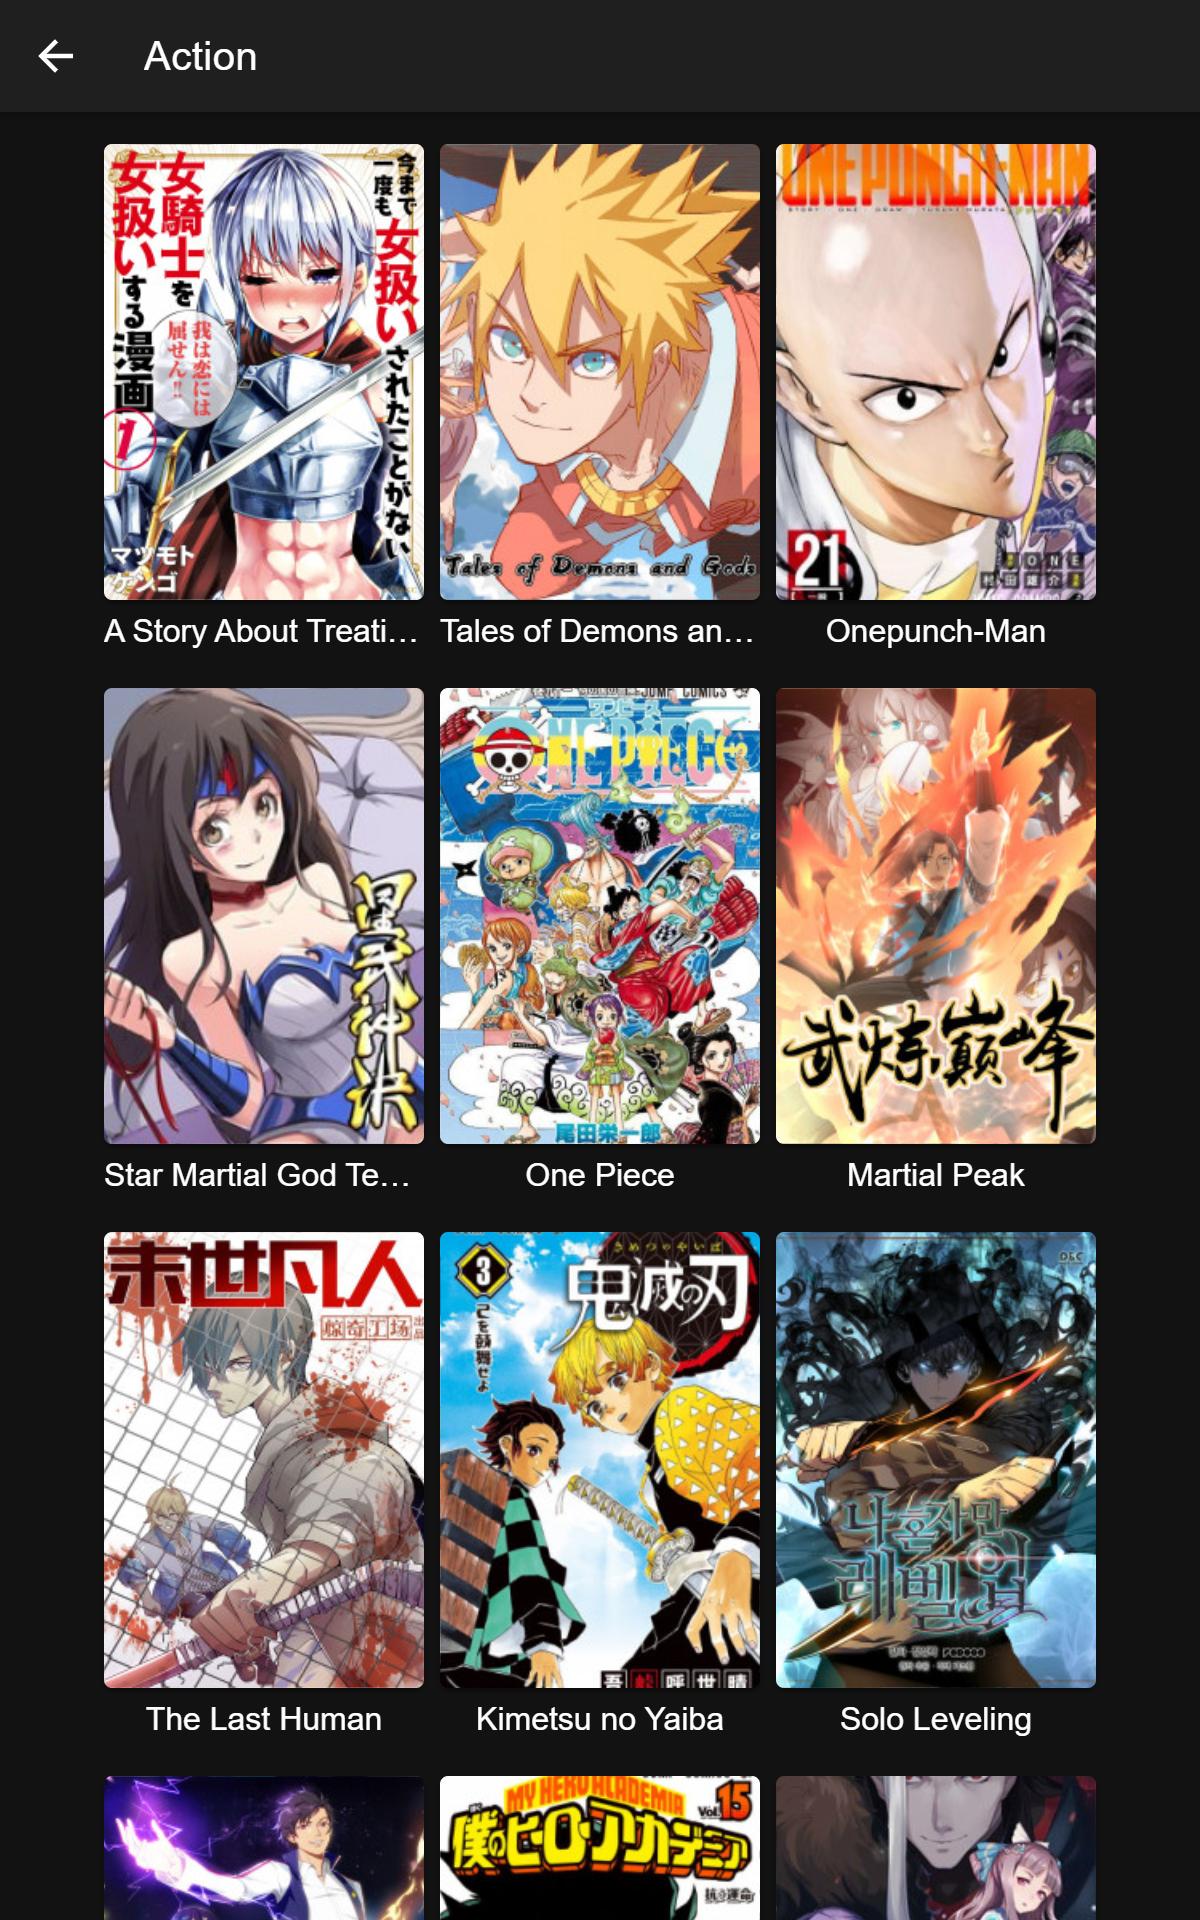 Manga Reader Read manga online free mangareader 0.0.12 Screenshot 12